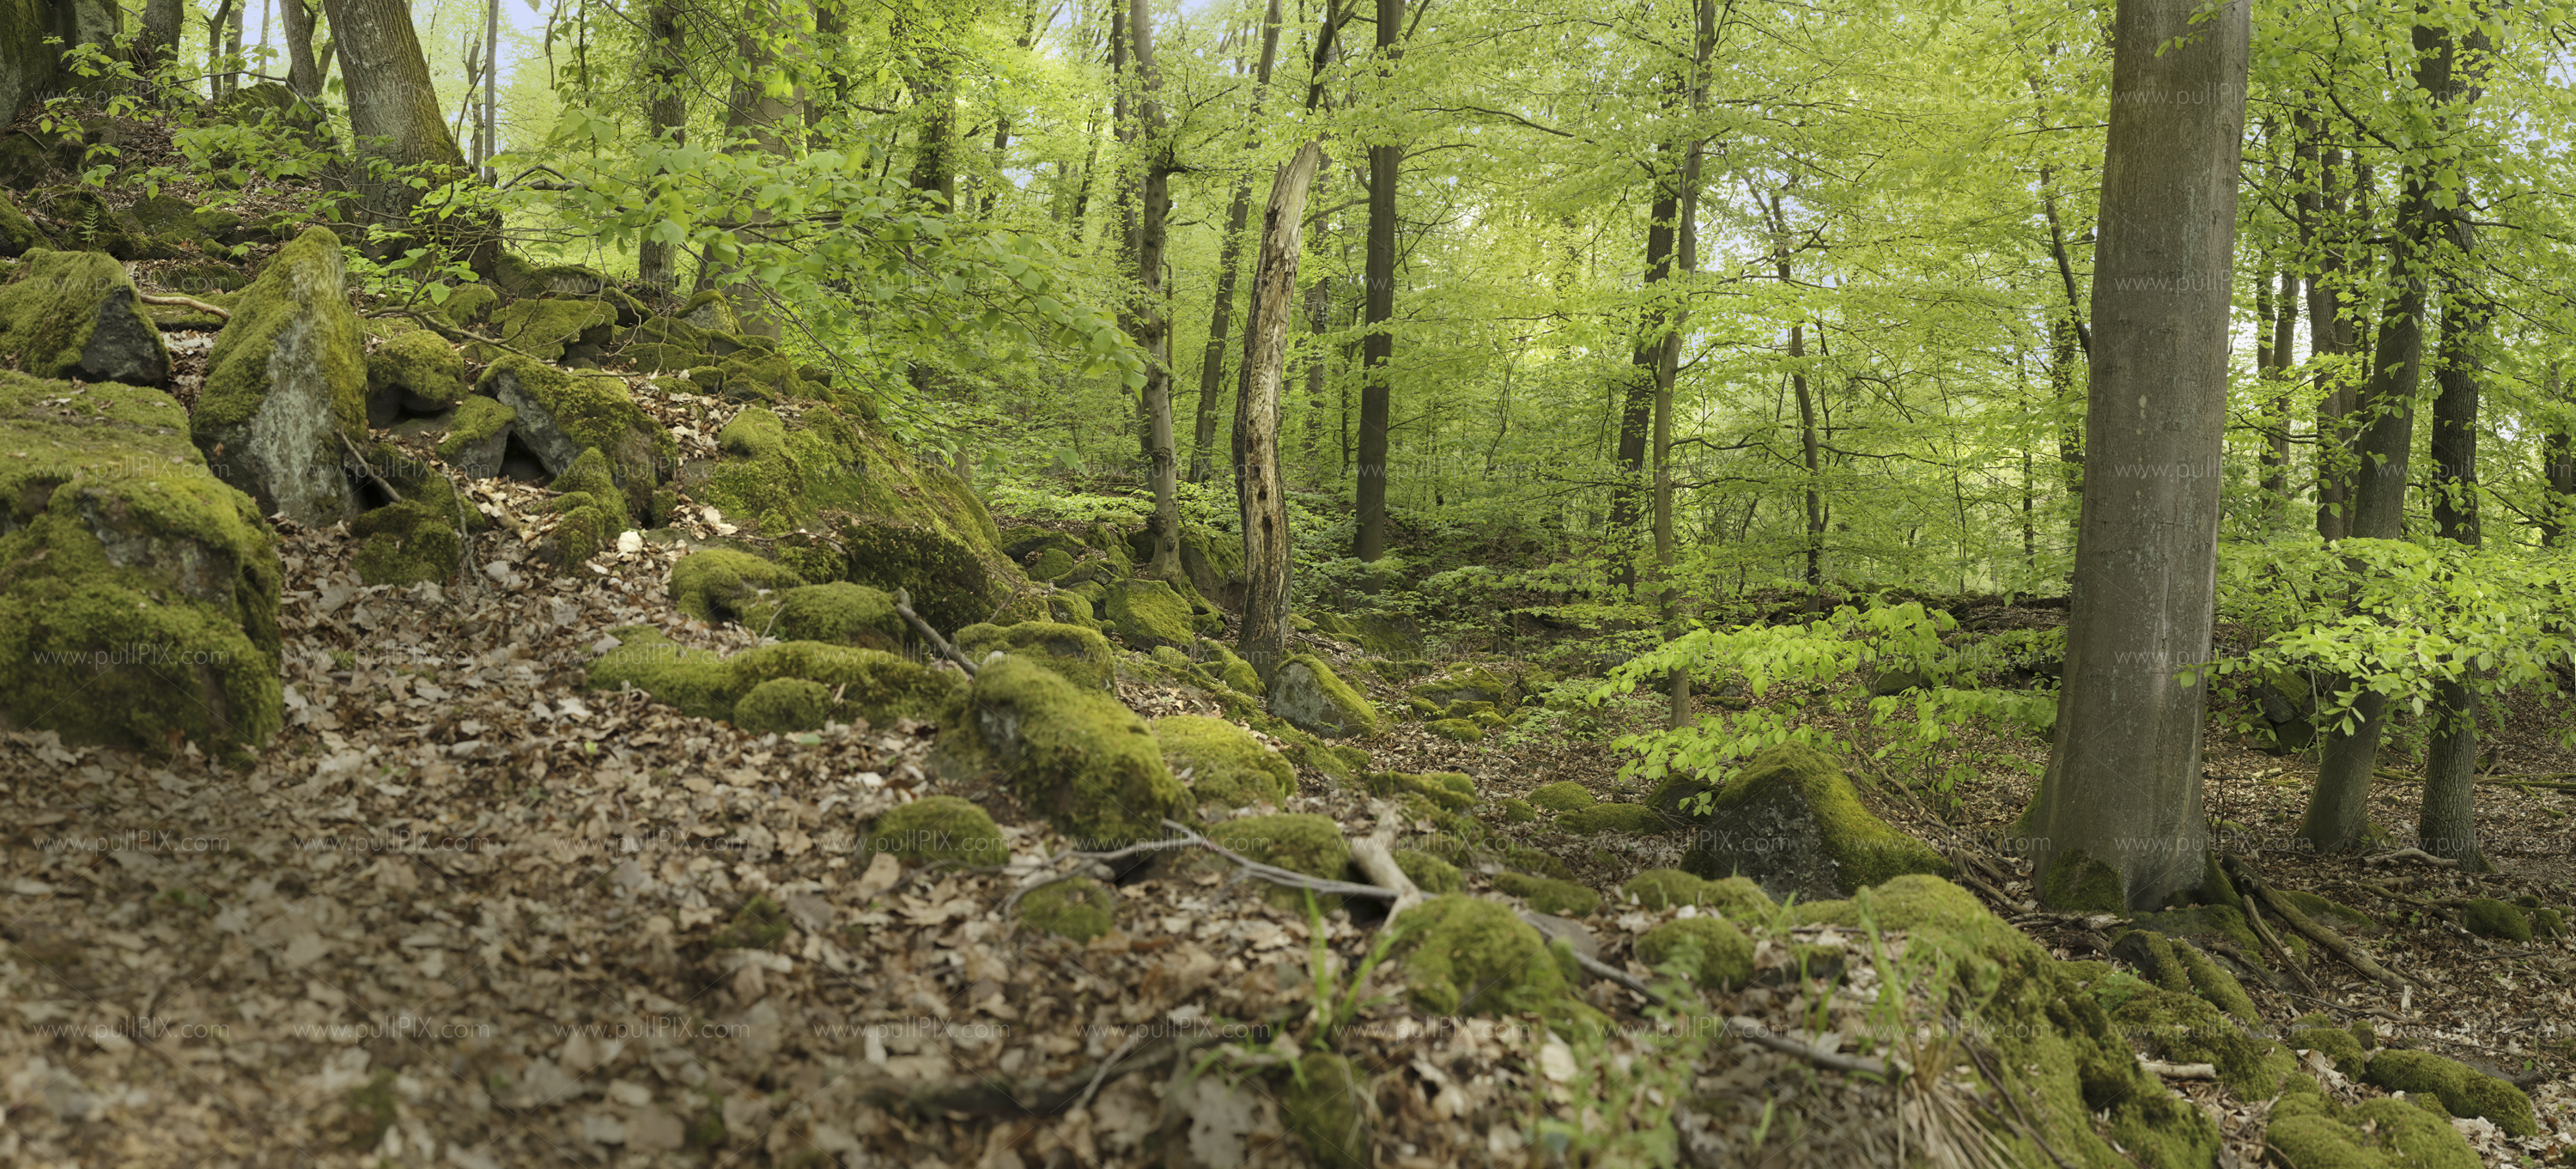 Preview fruehlingswald mit totholz.jpg